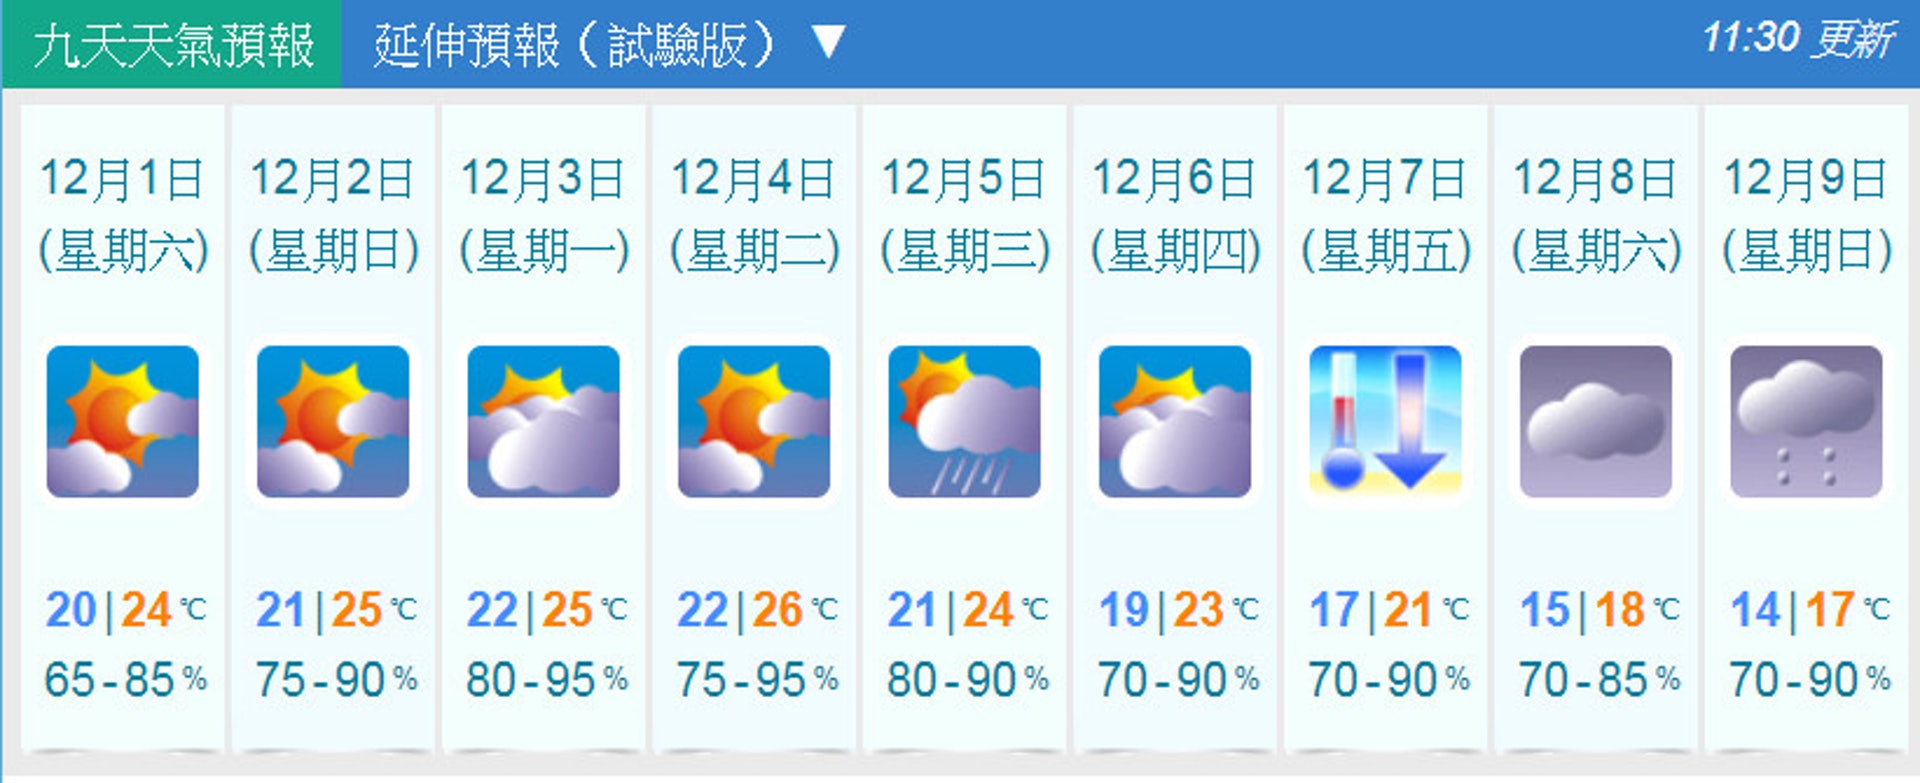 01天氣預報 下周日跌至14度入冬最凍歐洲預測低見10度 香港01 天氣